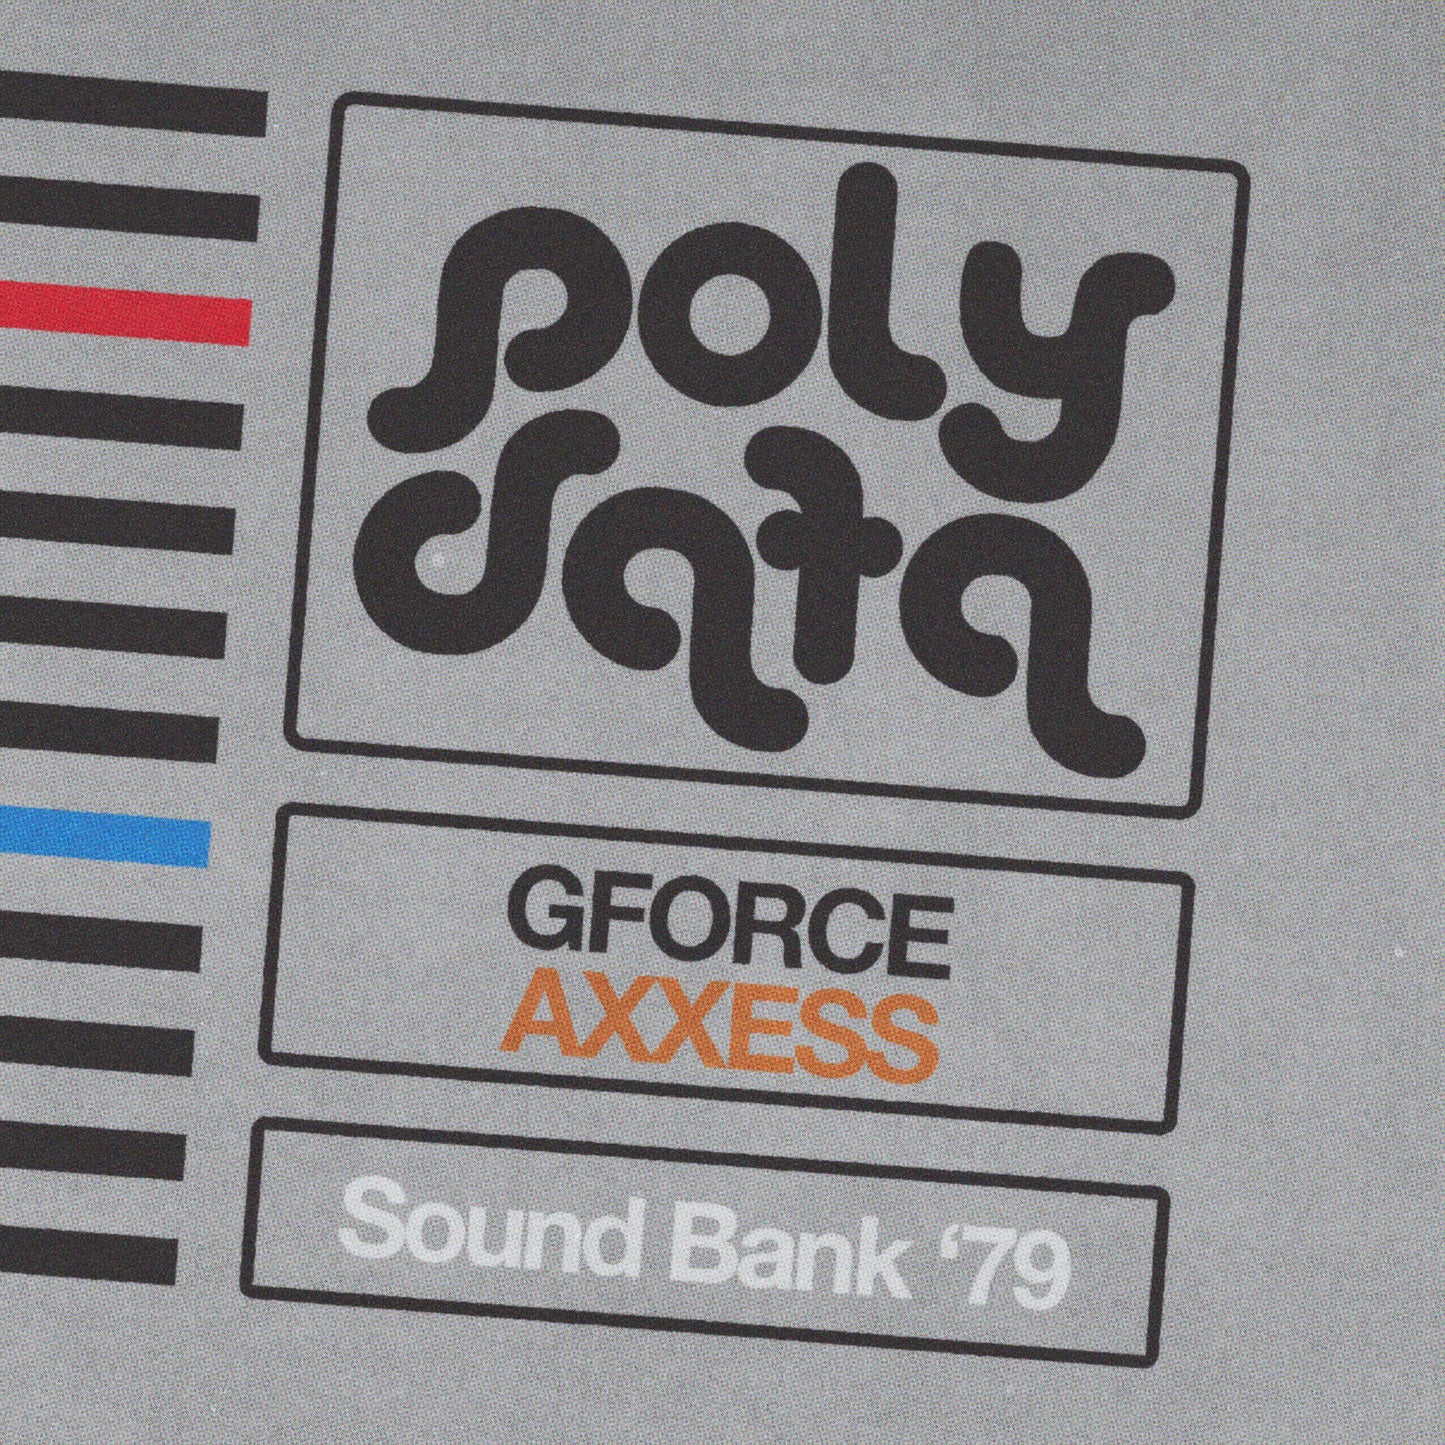 GForce AXXESS - Sound Bank '79